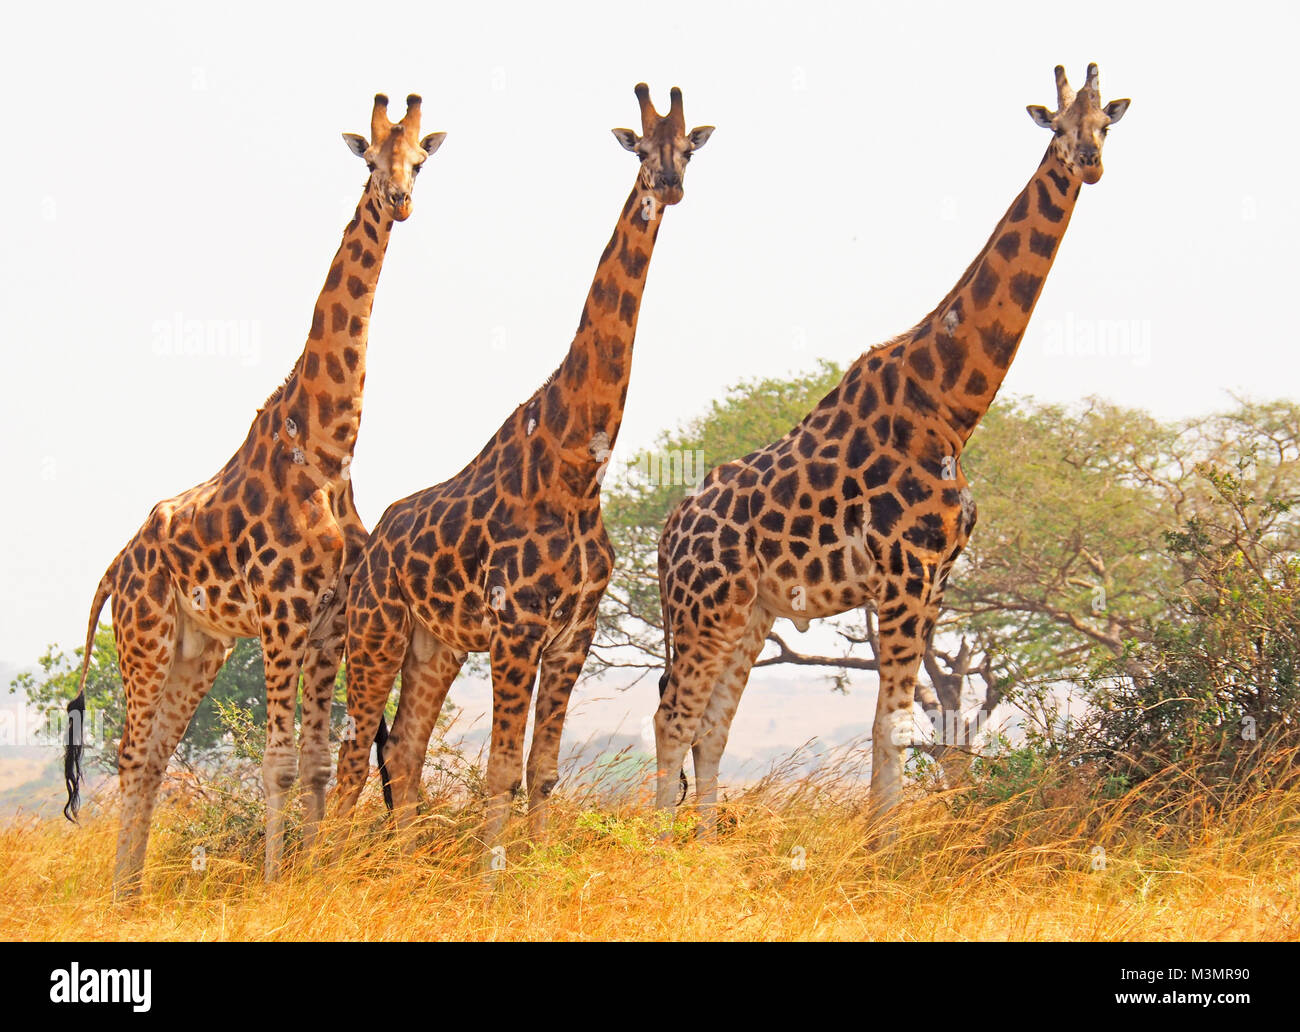 Tres en peligro de Rothschild jirafas en el Parque Nacional de Murchison Falls, Uganda. Foto de stock